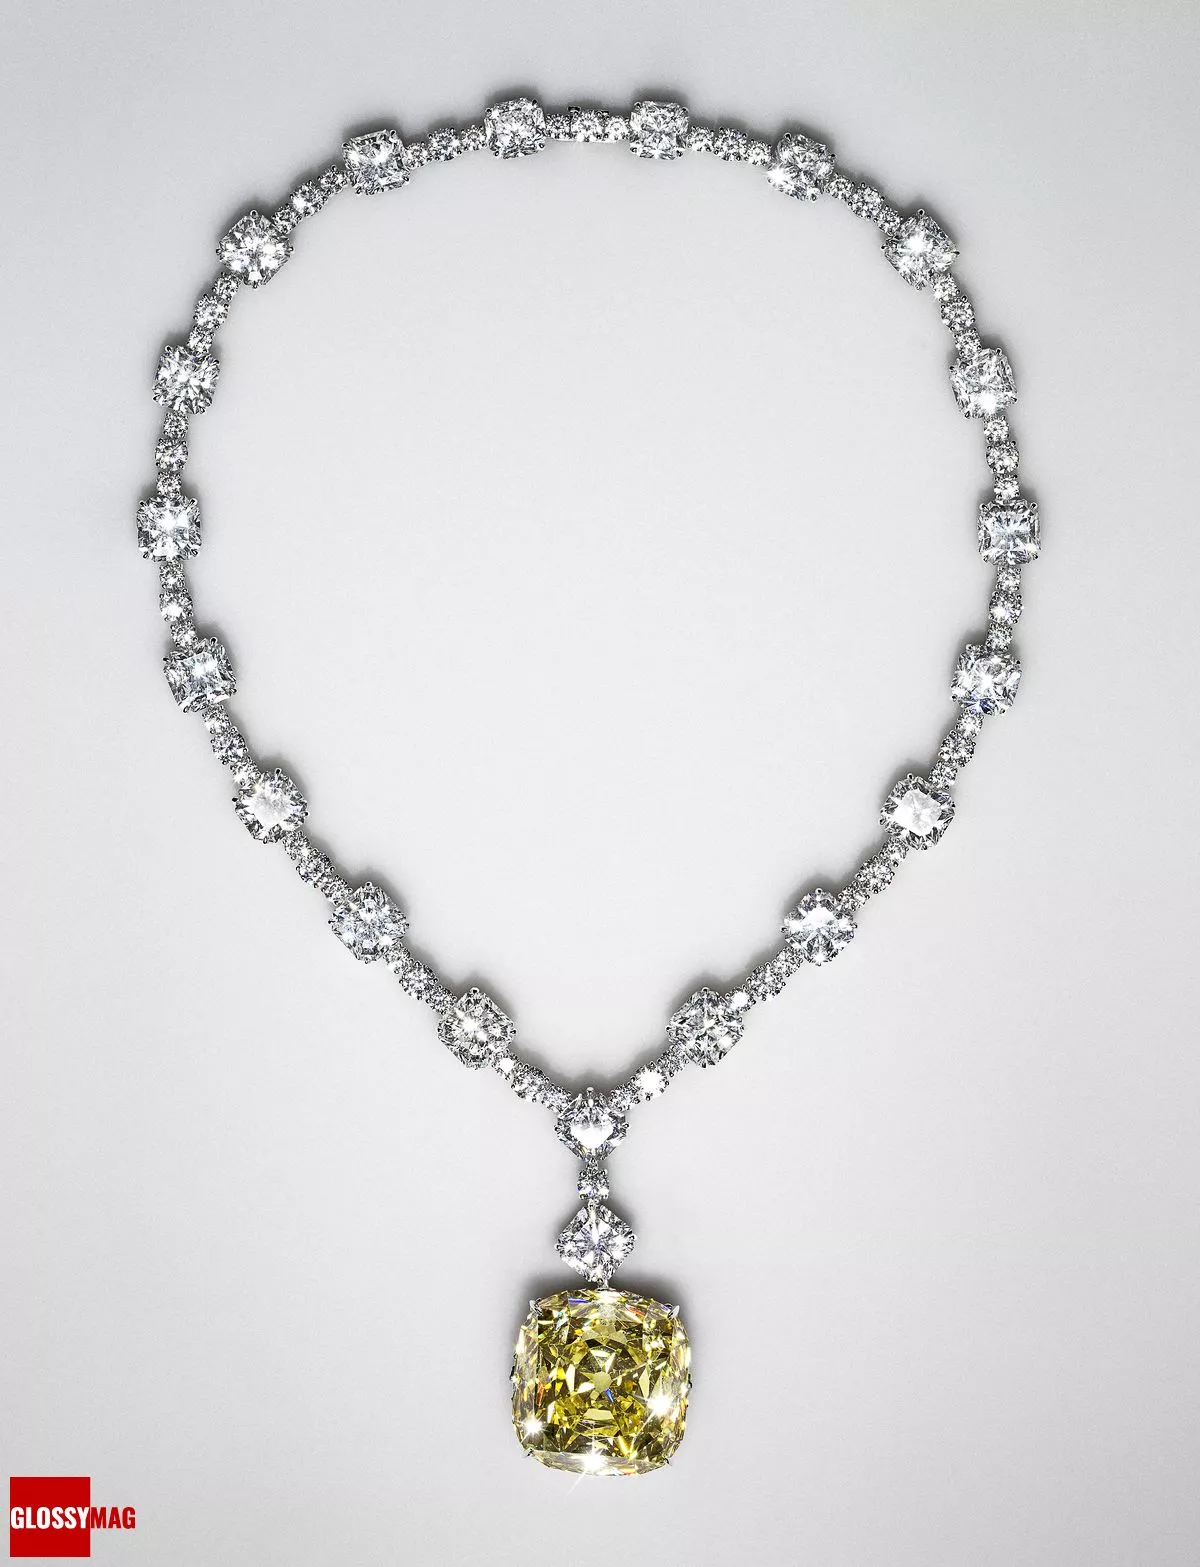 100-каратное бриллиантовое колье, изготовленное в 2012 году к 175-летию Дома Tiffany & Co.